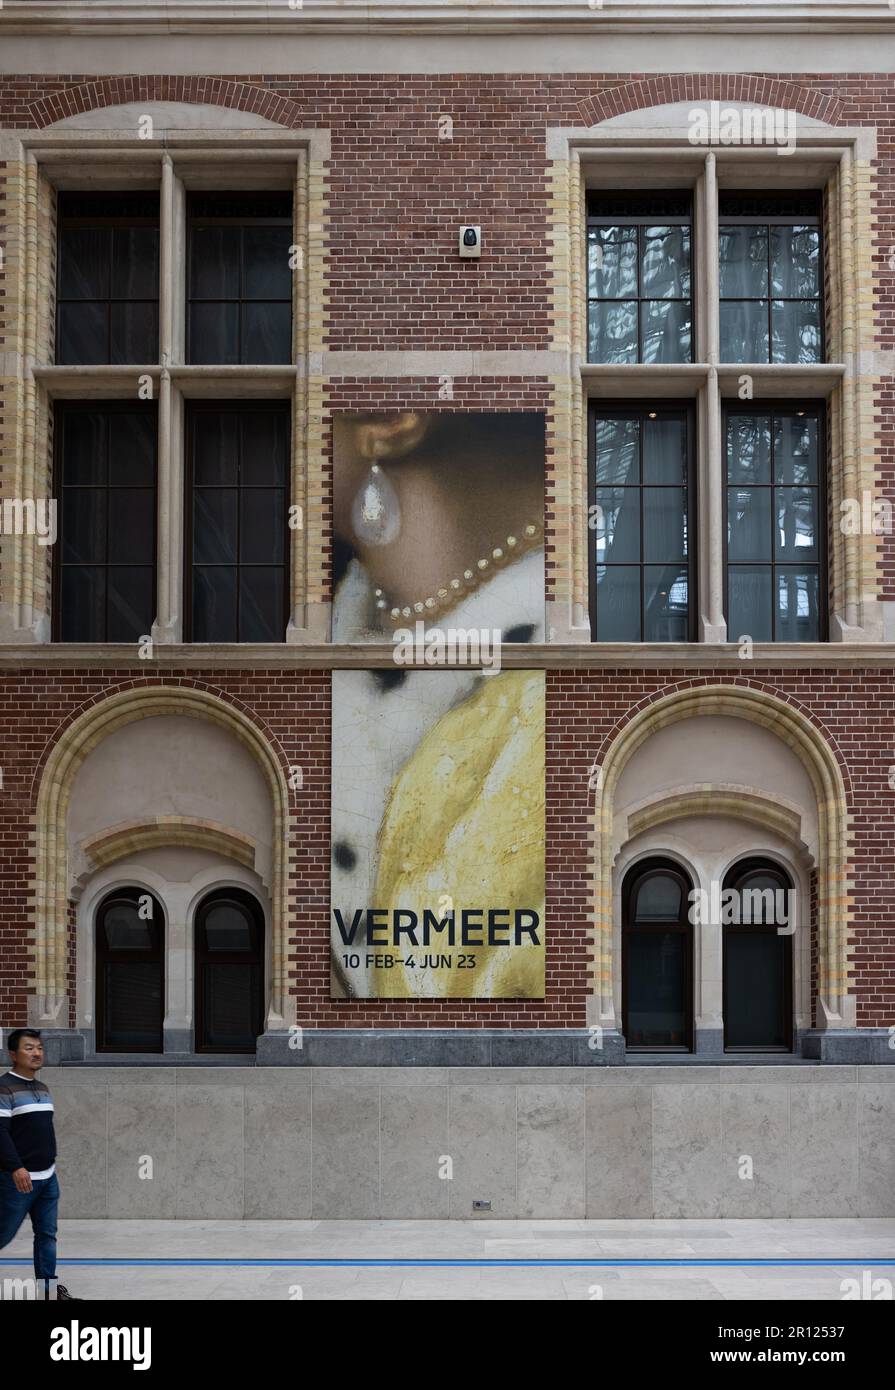 Amsterdam, pays-Bas - 21 avril 2023: Le Rijksmuseum à Amsterdam - la plus grande exposition sur le peintre néerlandais Johannes Vermeer - présentant 28 de ses chefs-d'œuvre Banque D'Images